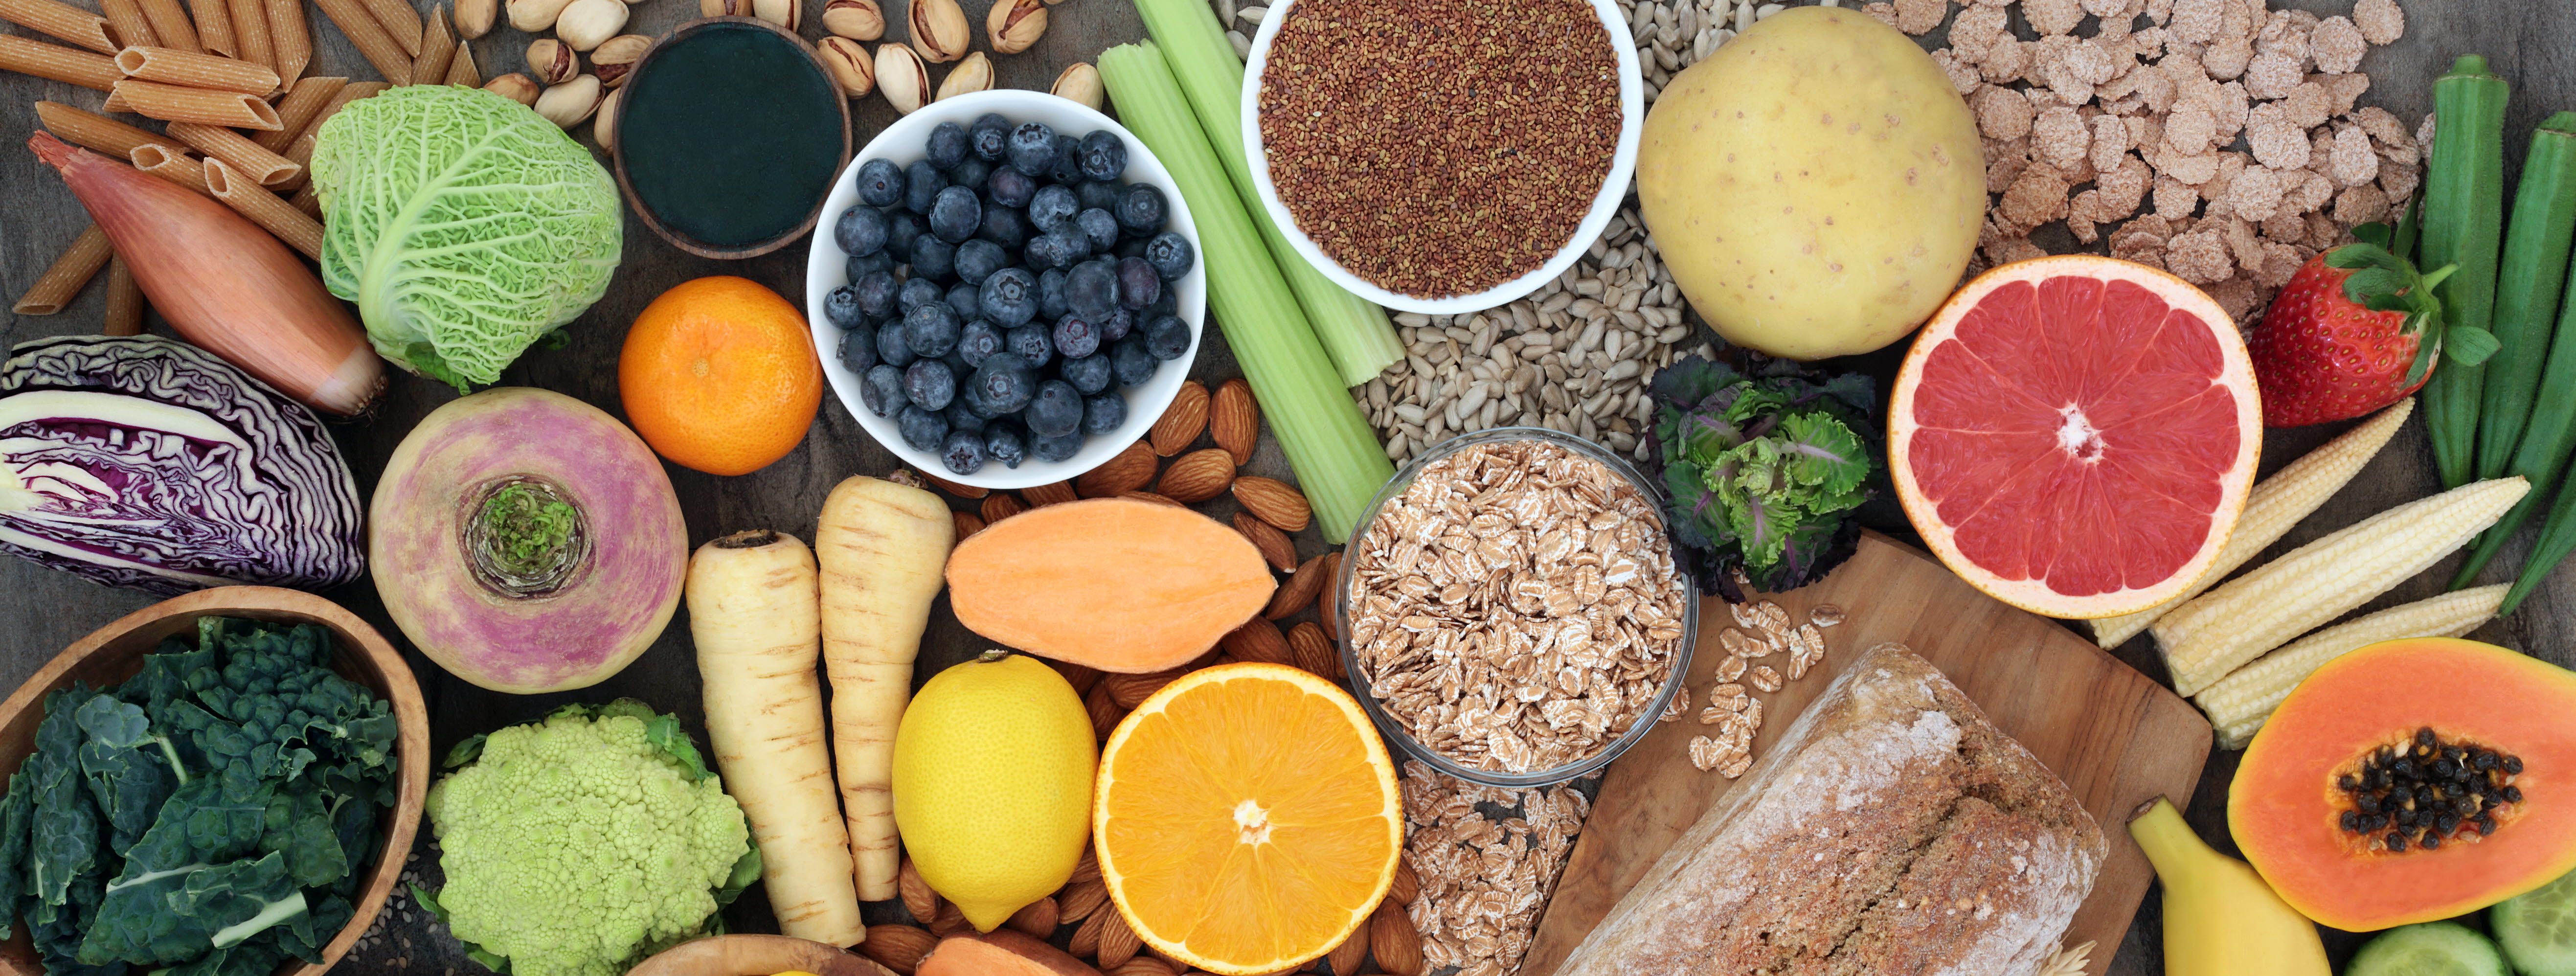 Ett hälsosamt kostmönster innehåller mycket grönsaker, fyllkornsprodukter, frukt, bär, nötter